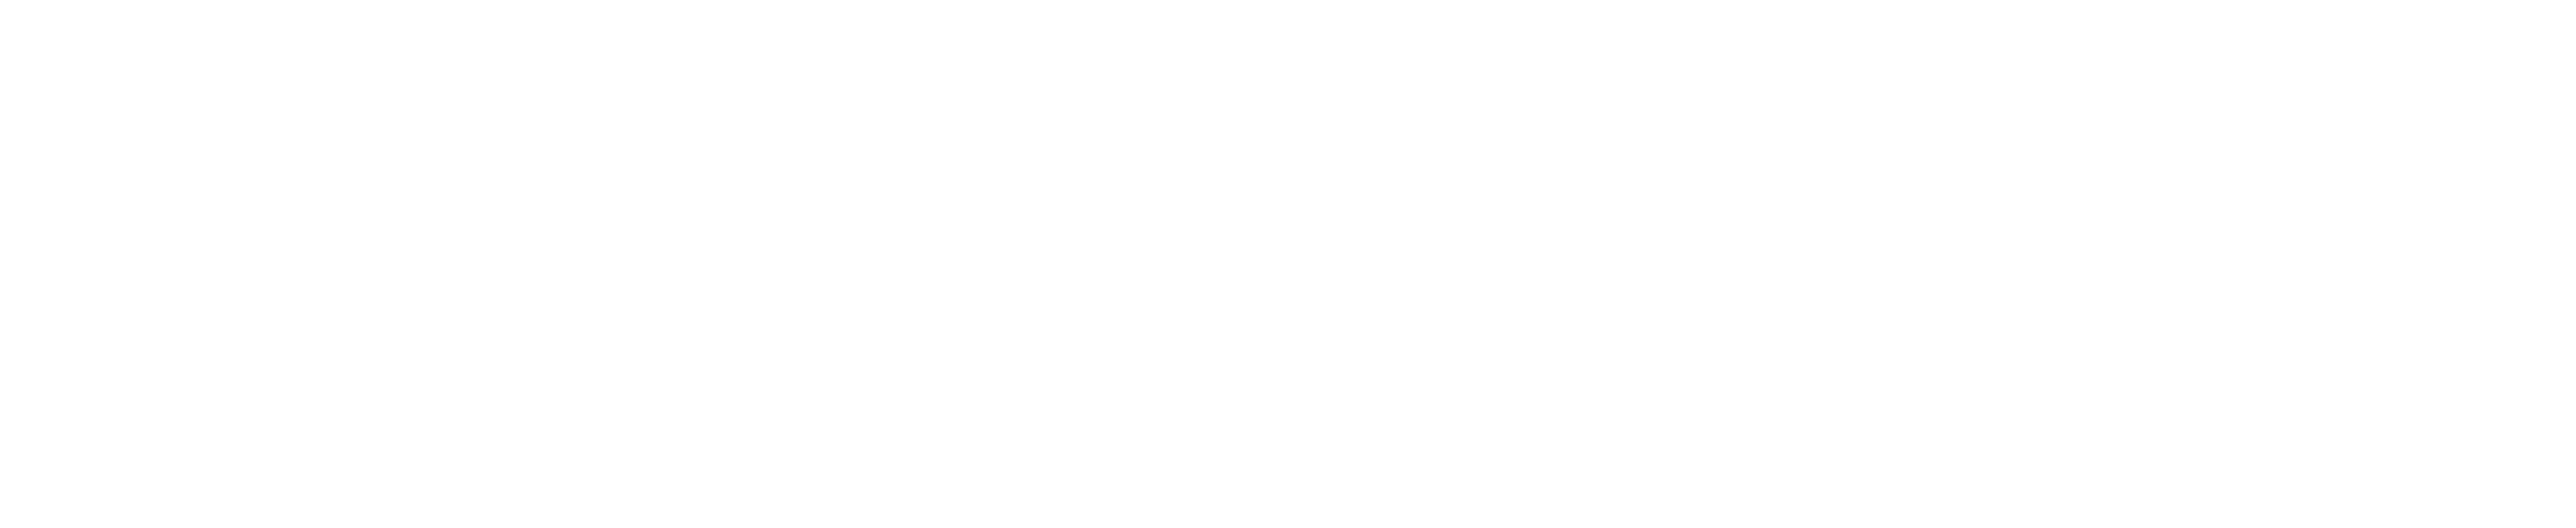 Unofficial Run Club Logo